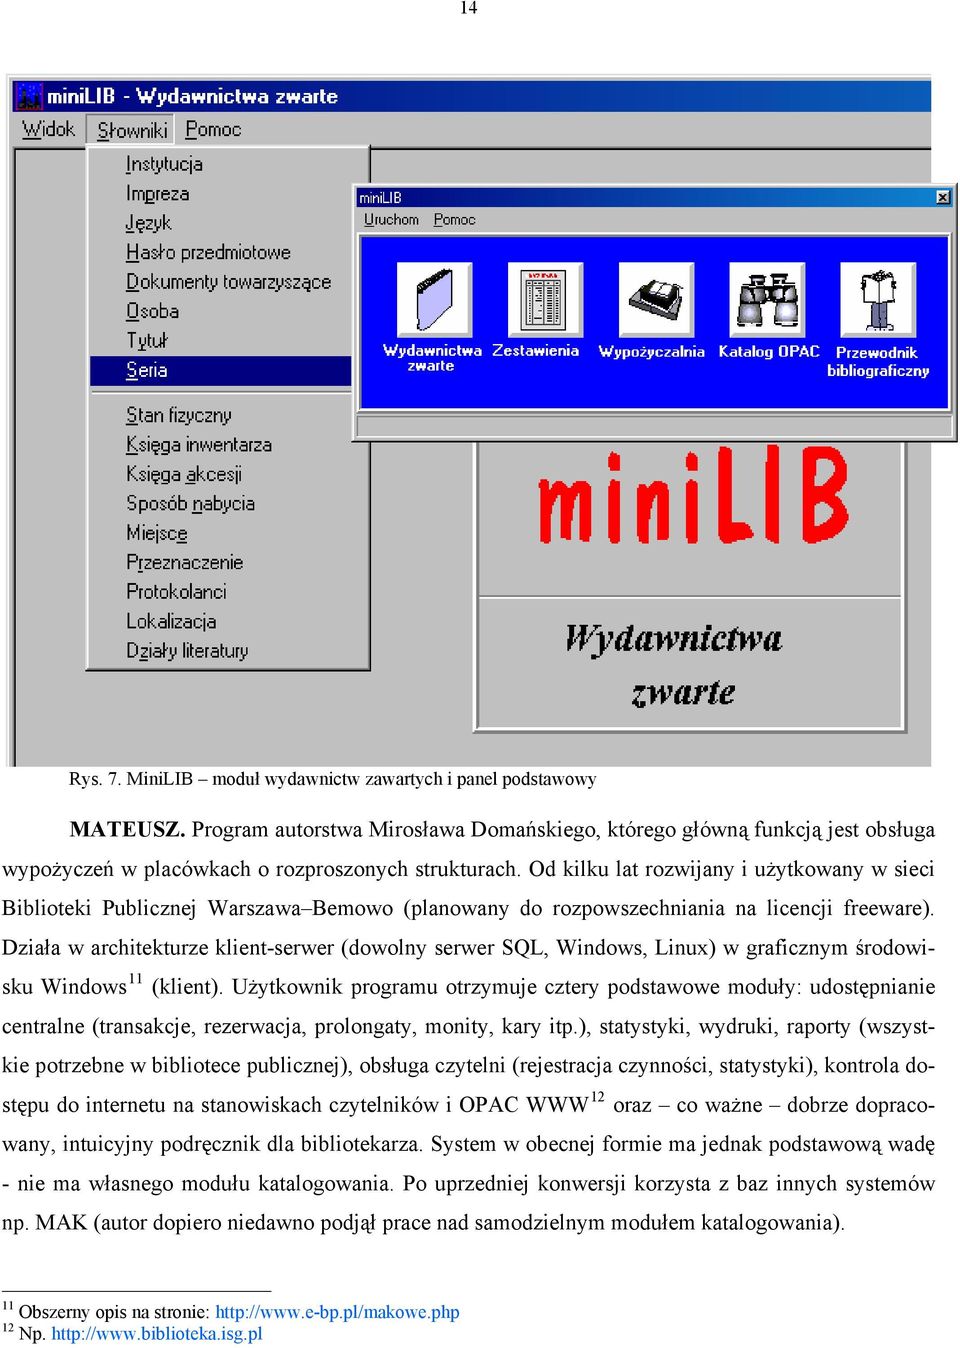 Od kilku lat rozwijany i użytkowany w sieci Biblioteki Publicznej Warszawa Bemowo (planowany do rozpowszechniania na licencji freeware).